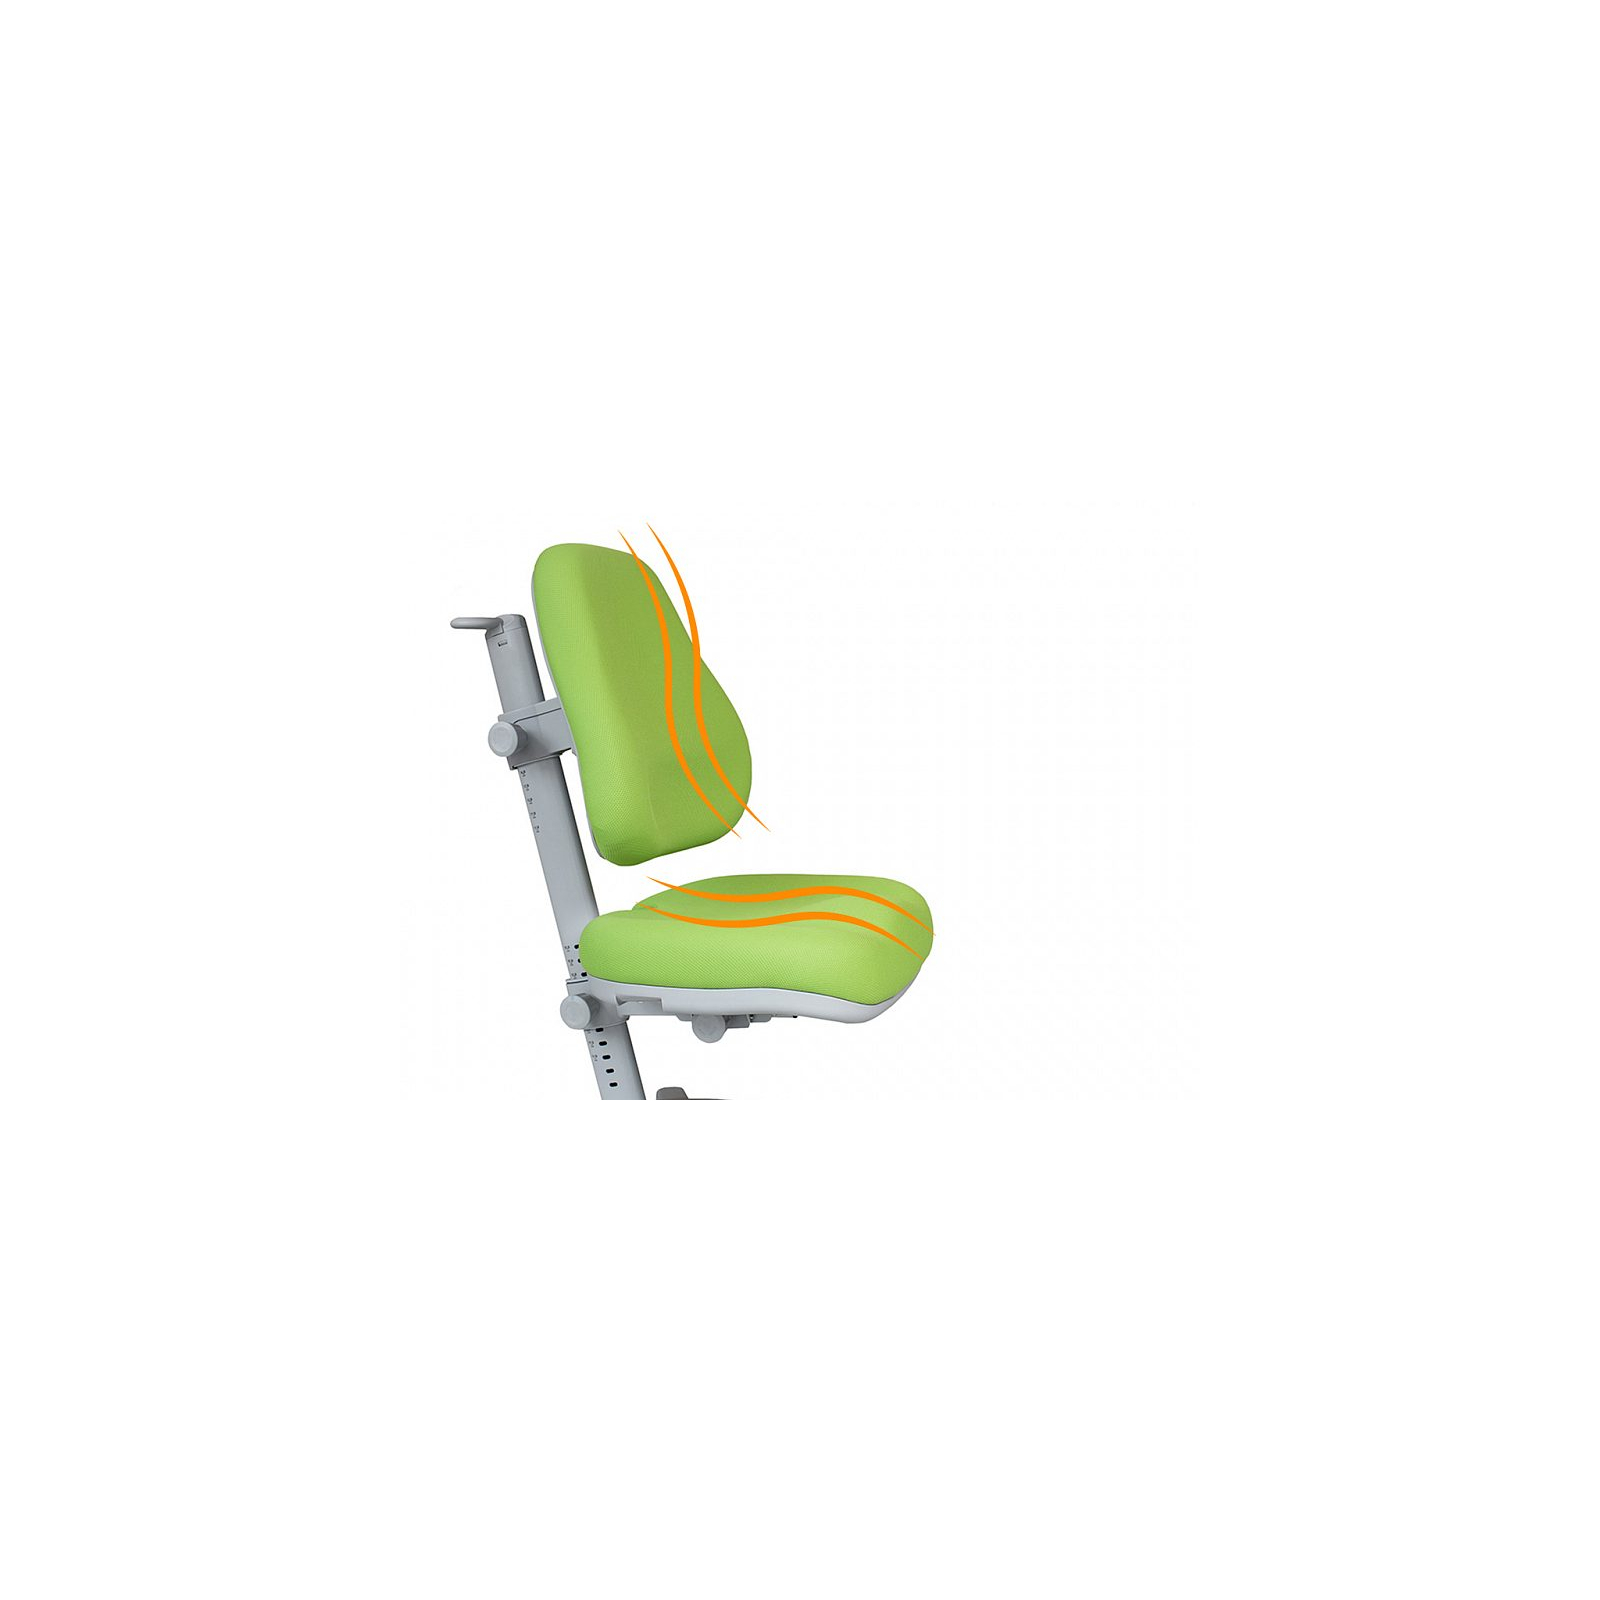 Дитяче крісло Mealux Onyx APK (Y-110 APK) зображення 2